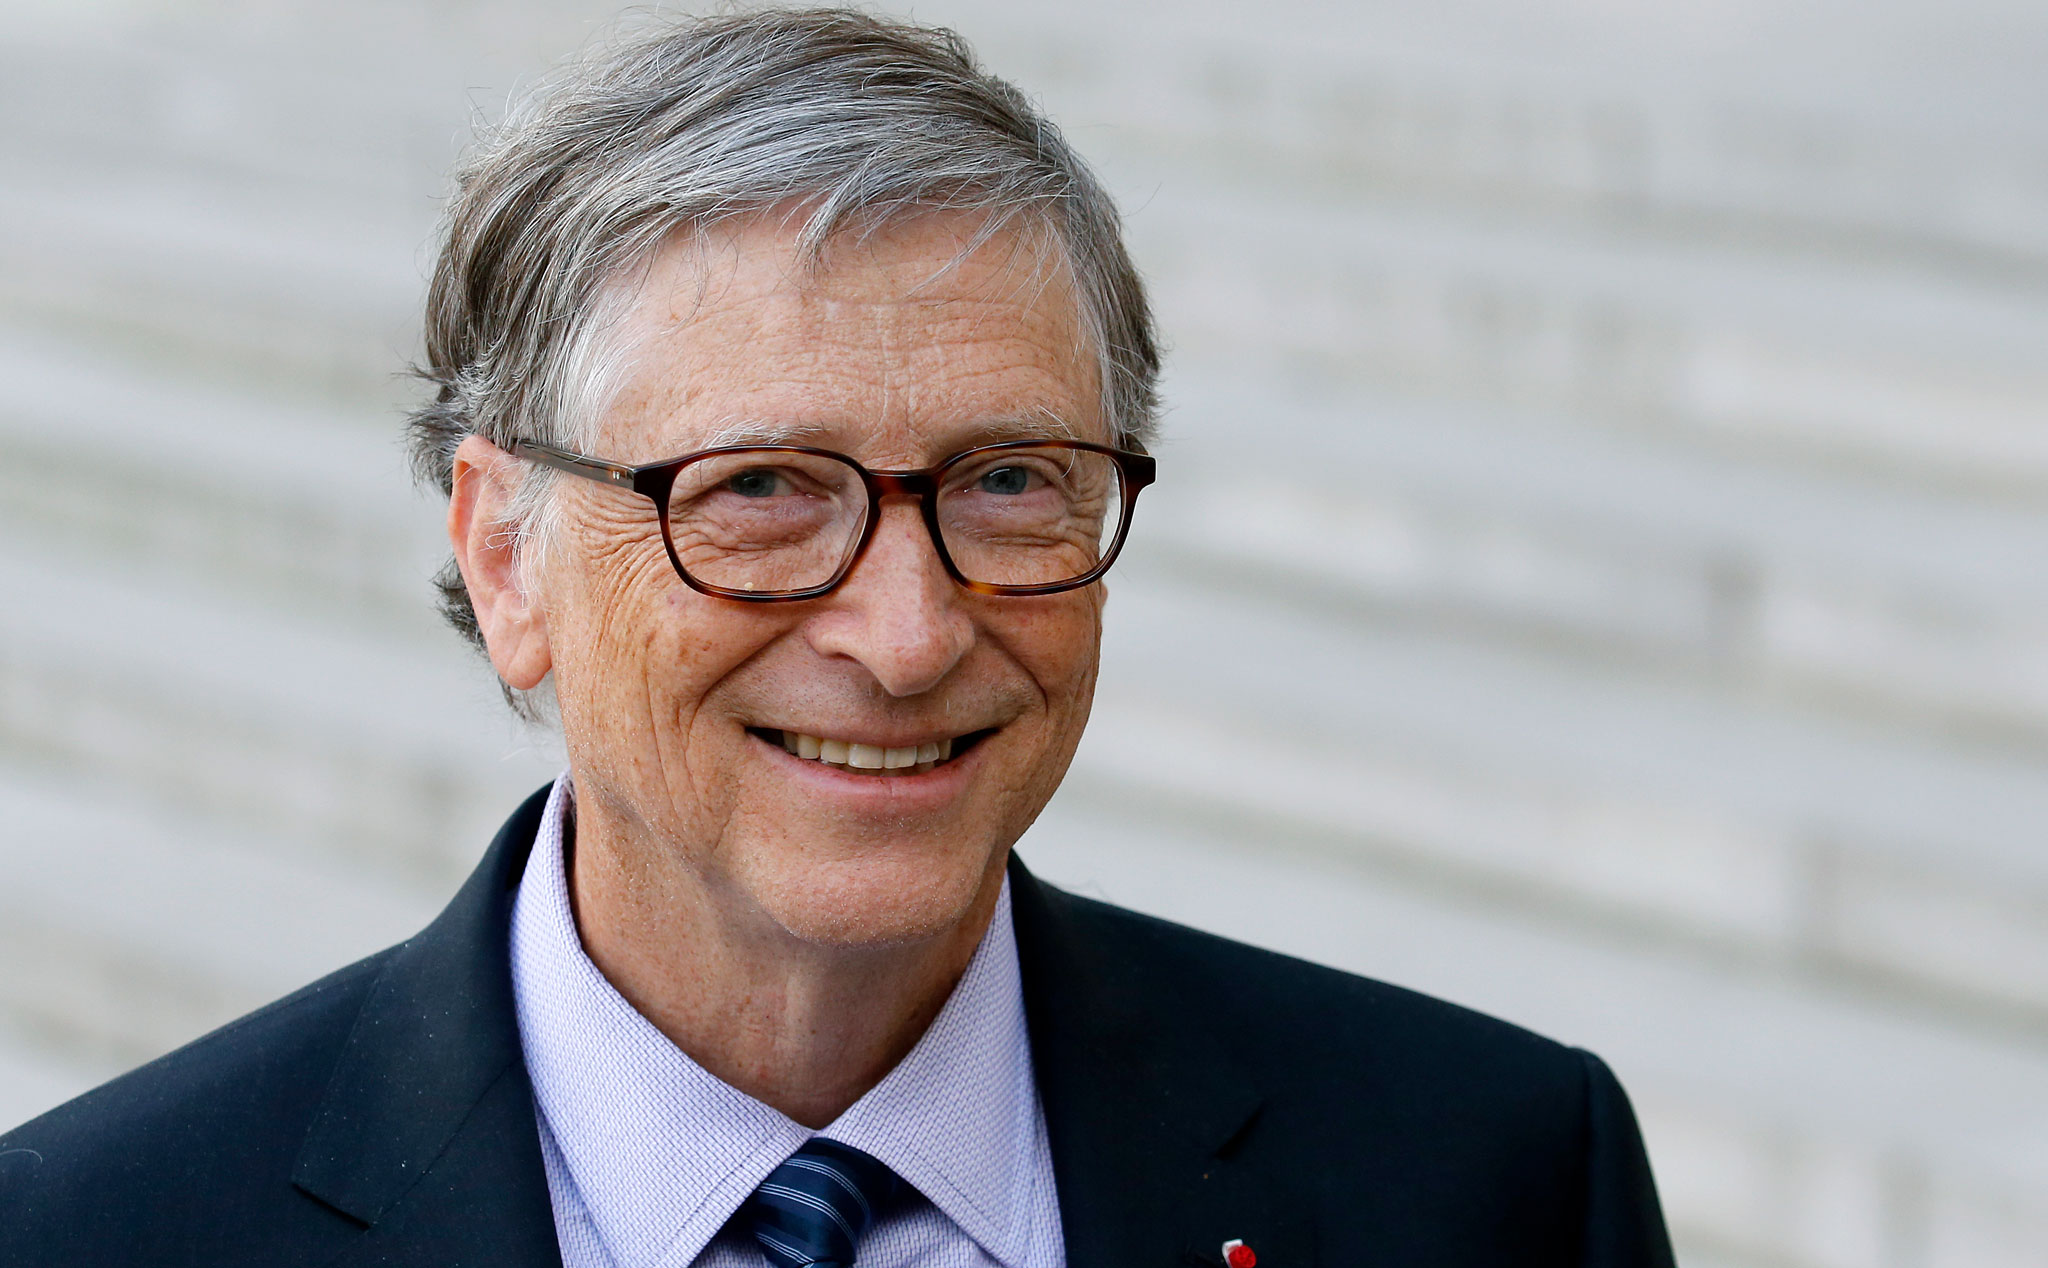 Liệu Bill Gates có phải là người thông minh nhất tại Microsoft?